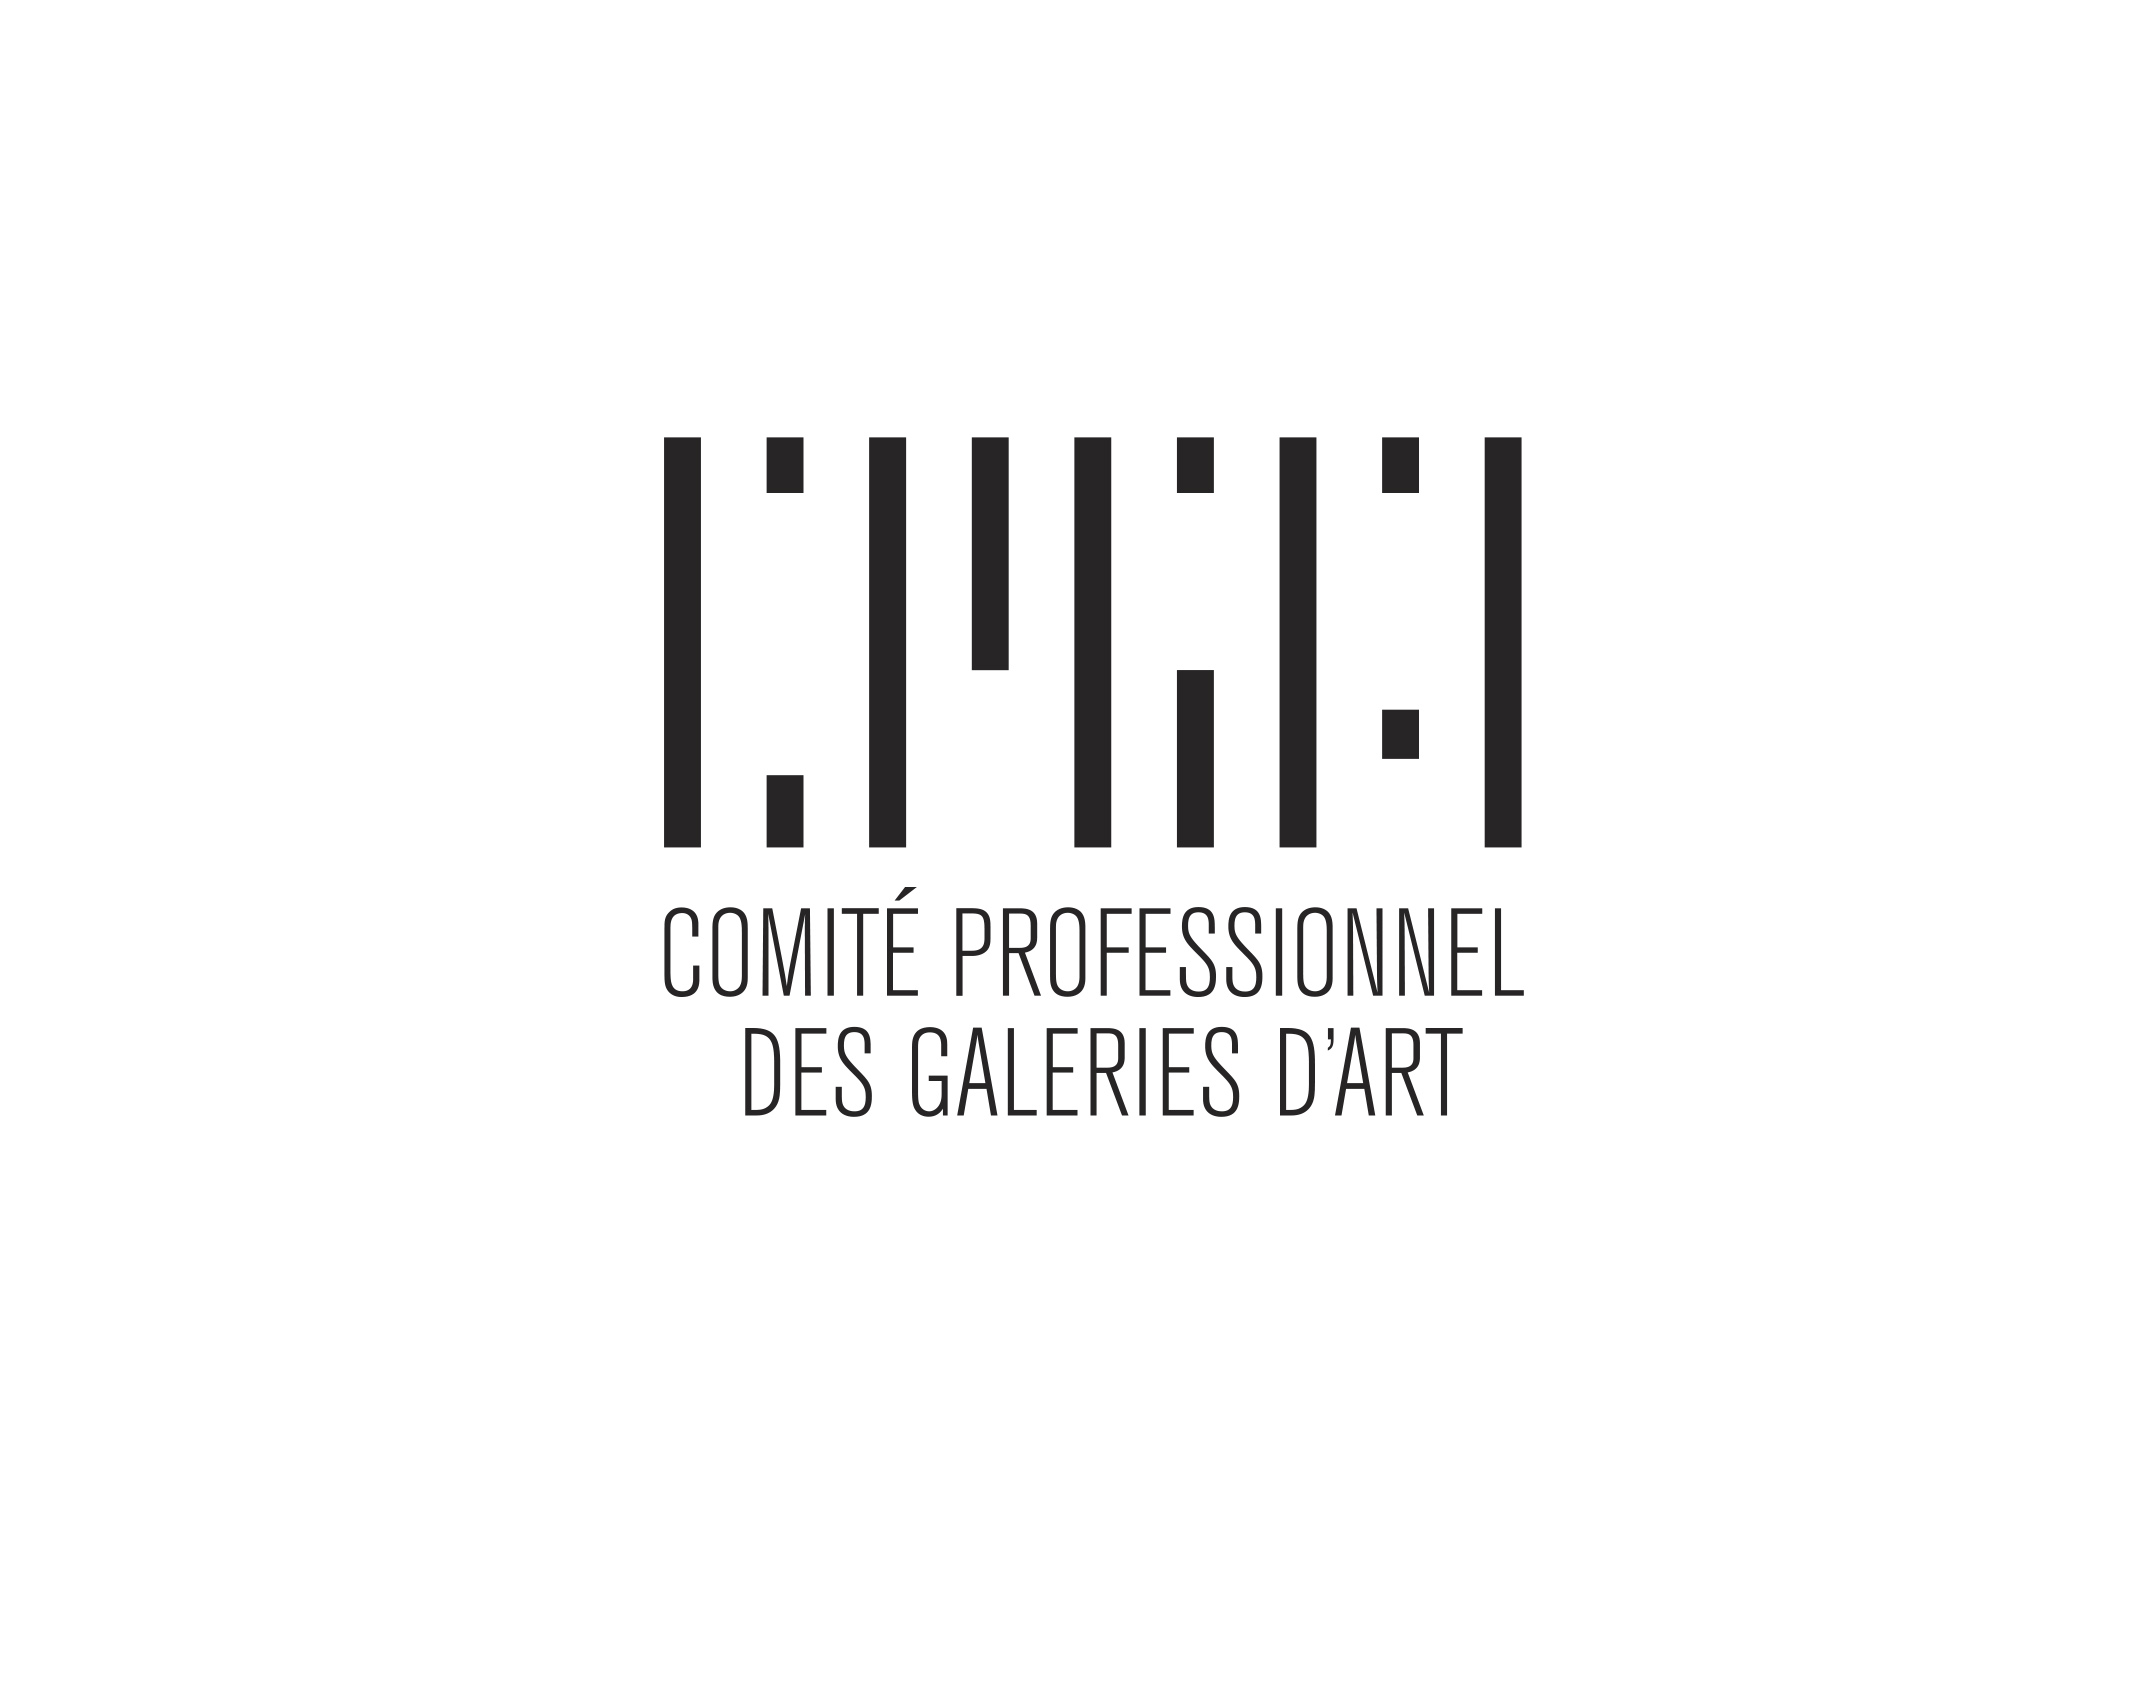 Comité professionnel des galeries d'art